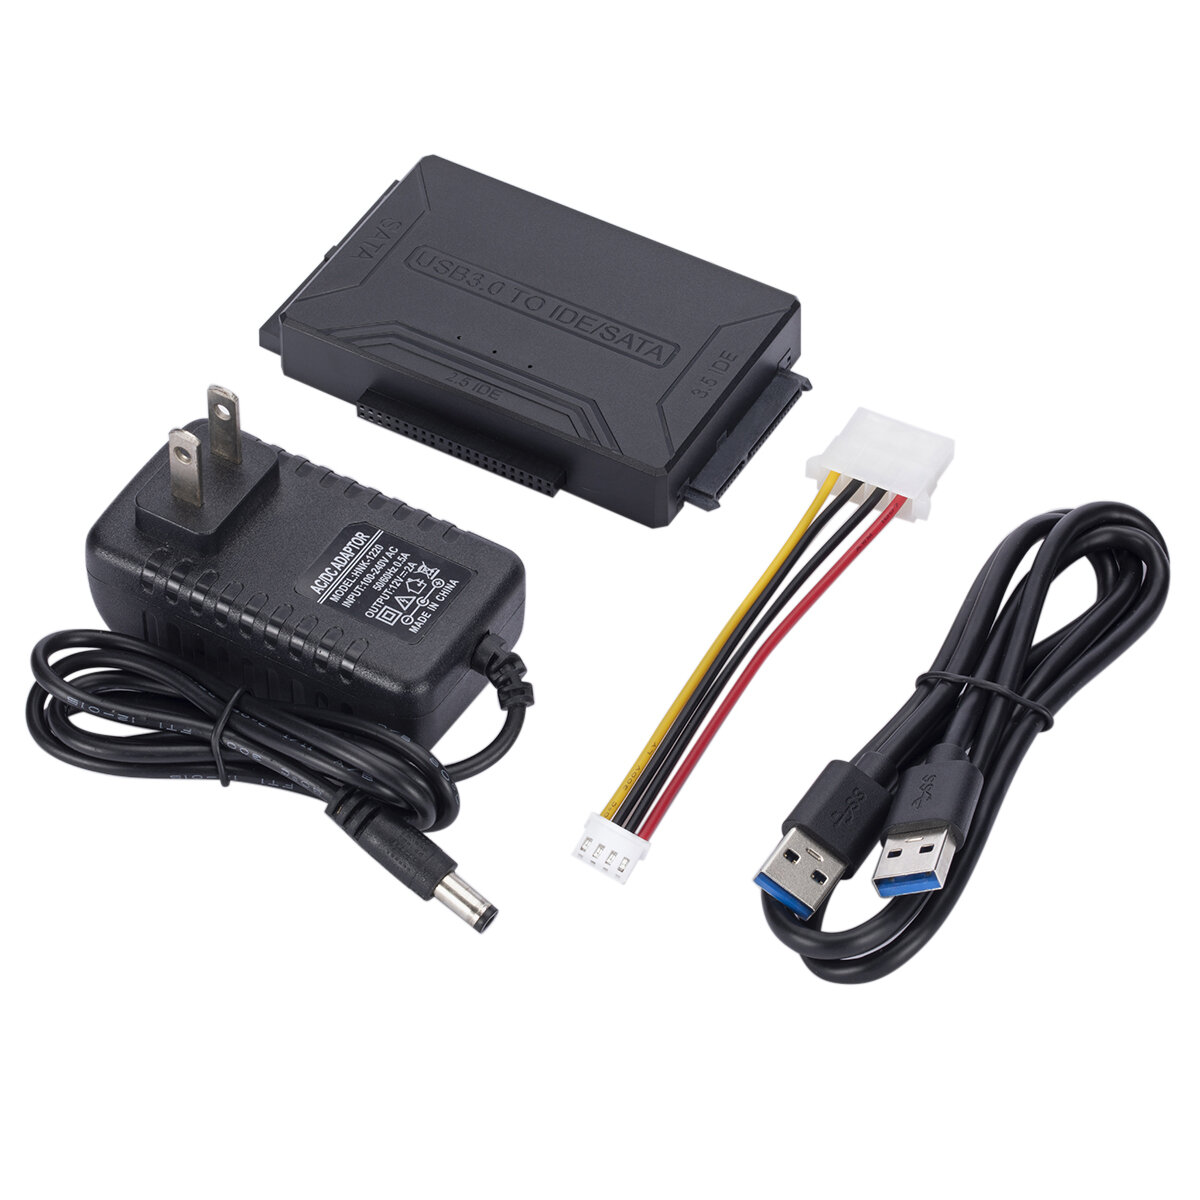 MnnWuu USB 3.0 naar SATA/IDE-adapter, adapterkabel voor harde schijf voor universele 2,5/3,5 inch SA